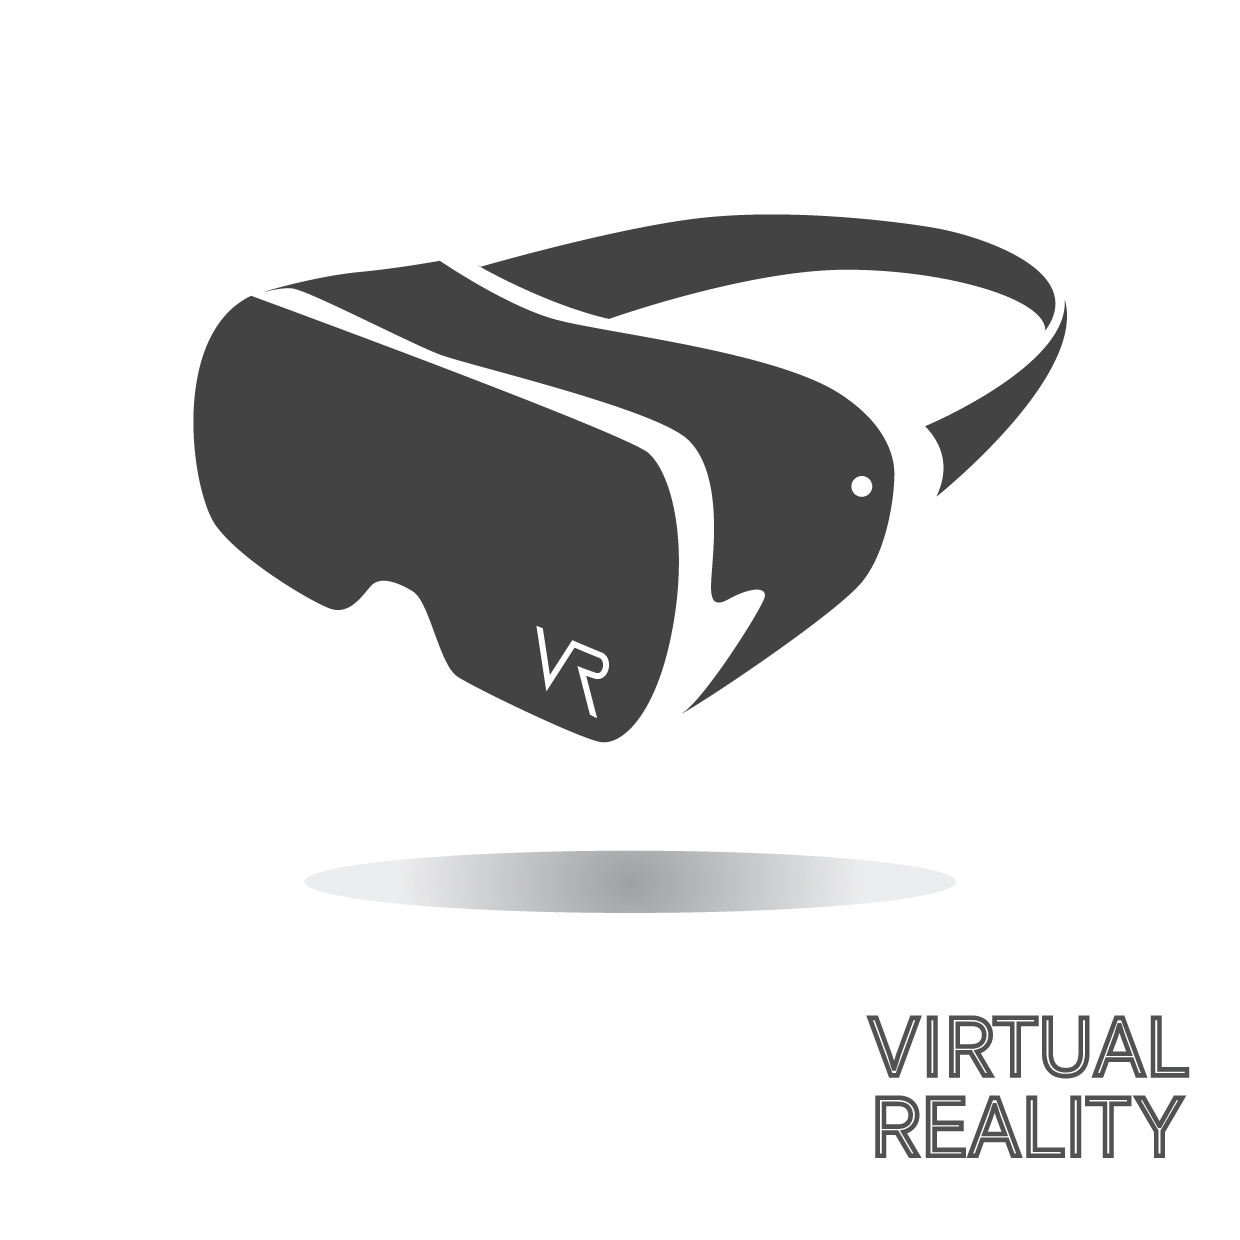 VR goggles